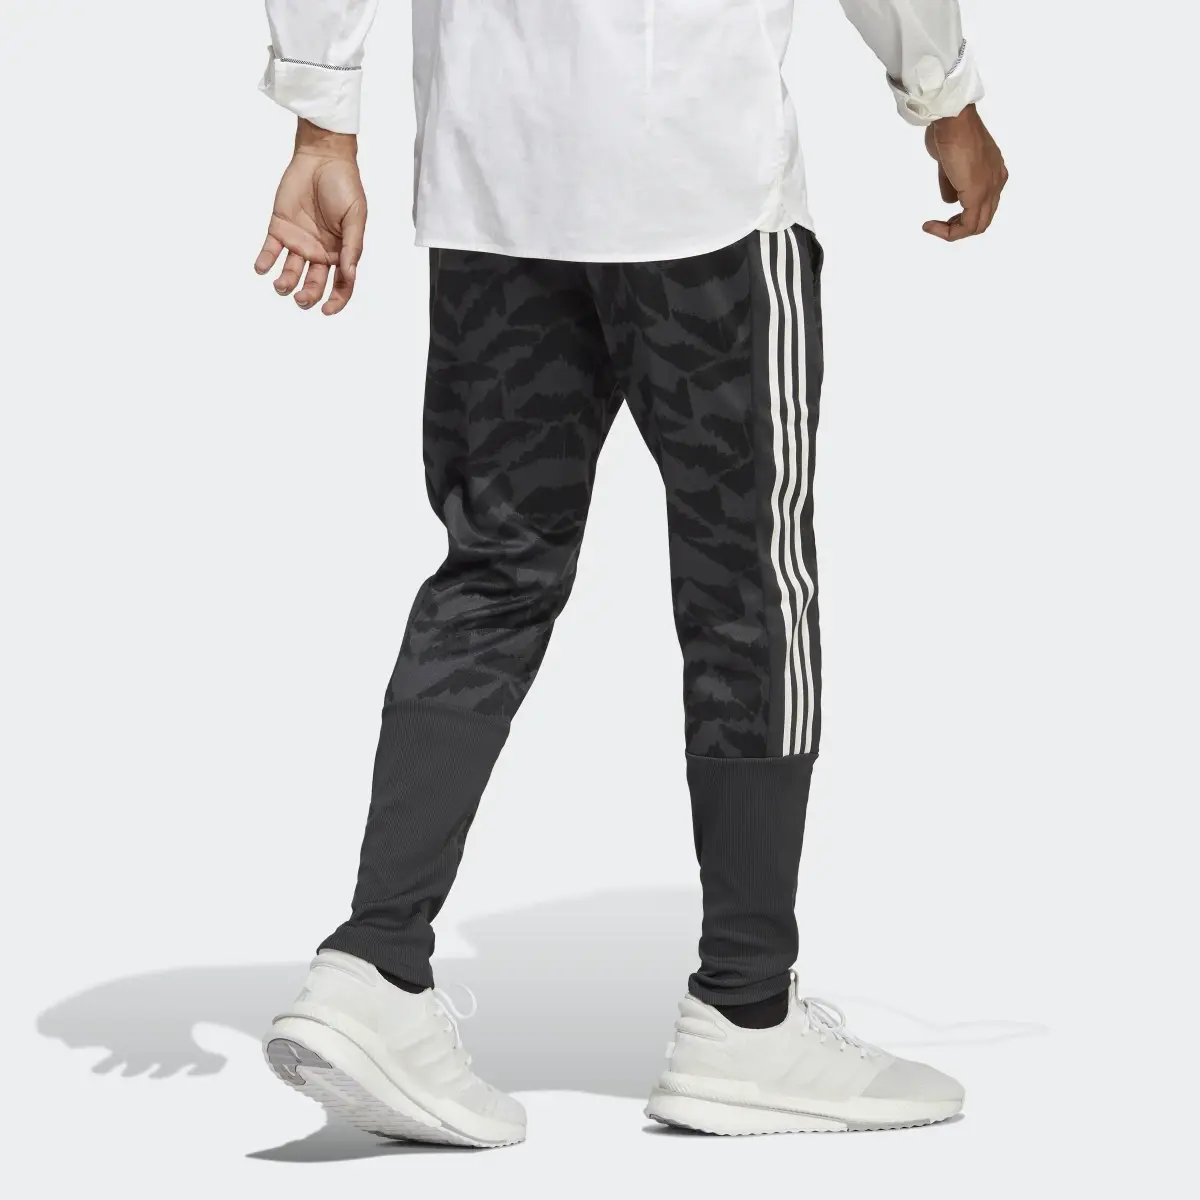 Adidas Tiro Suit-Up Lifestyle Trainingshose. 2